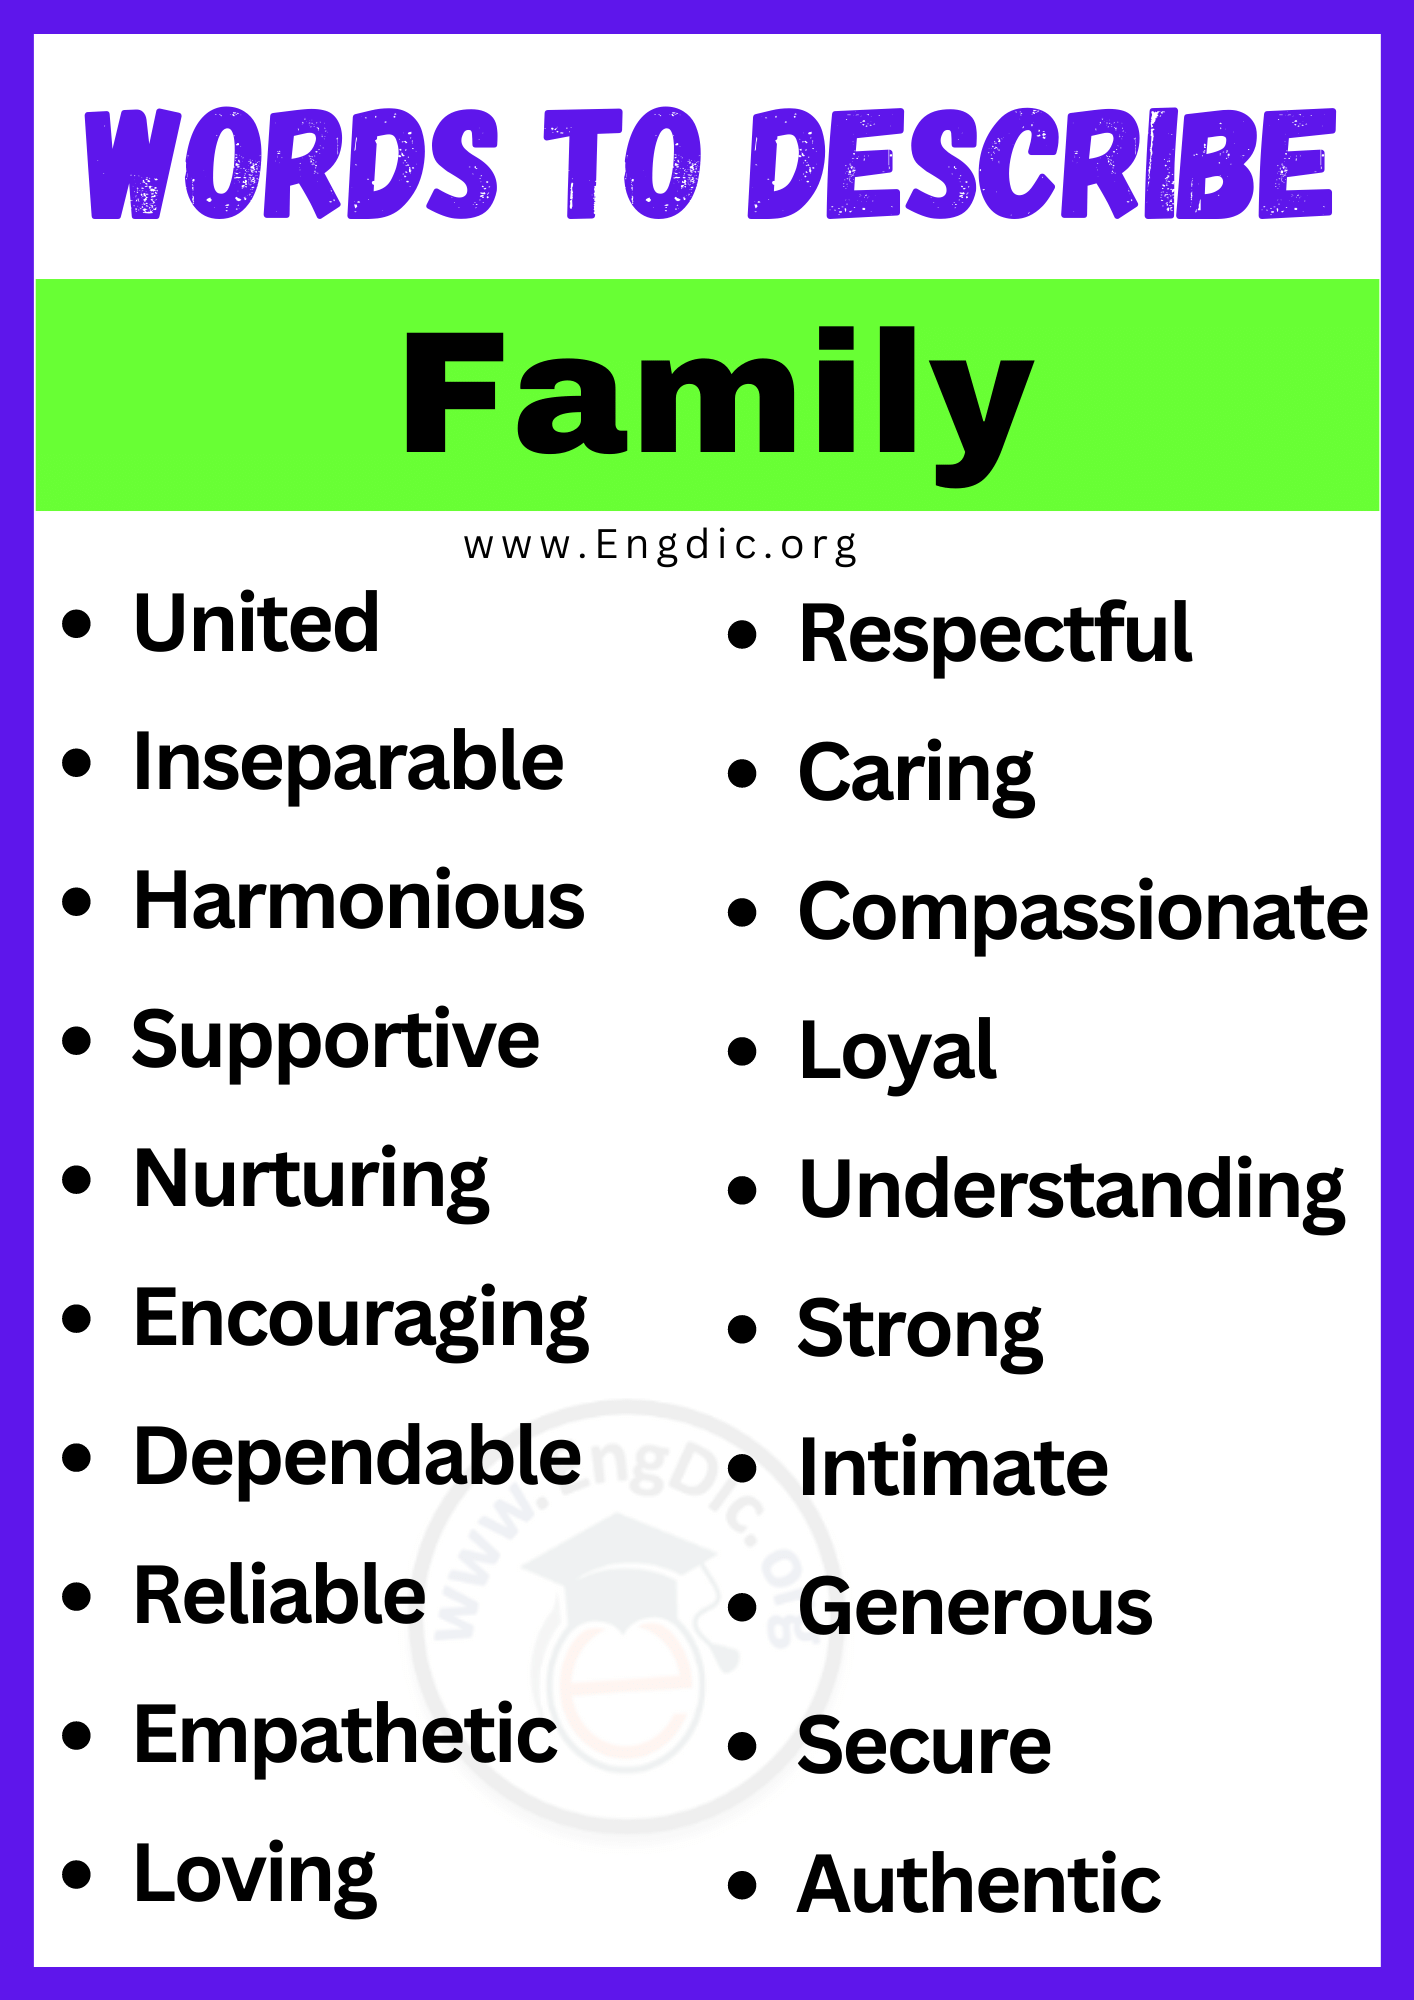 Words to Describe Family